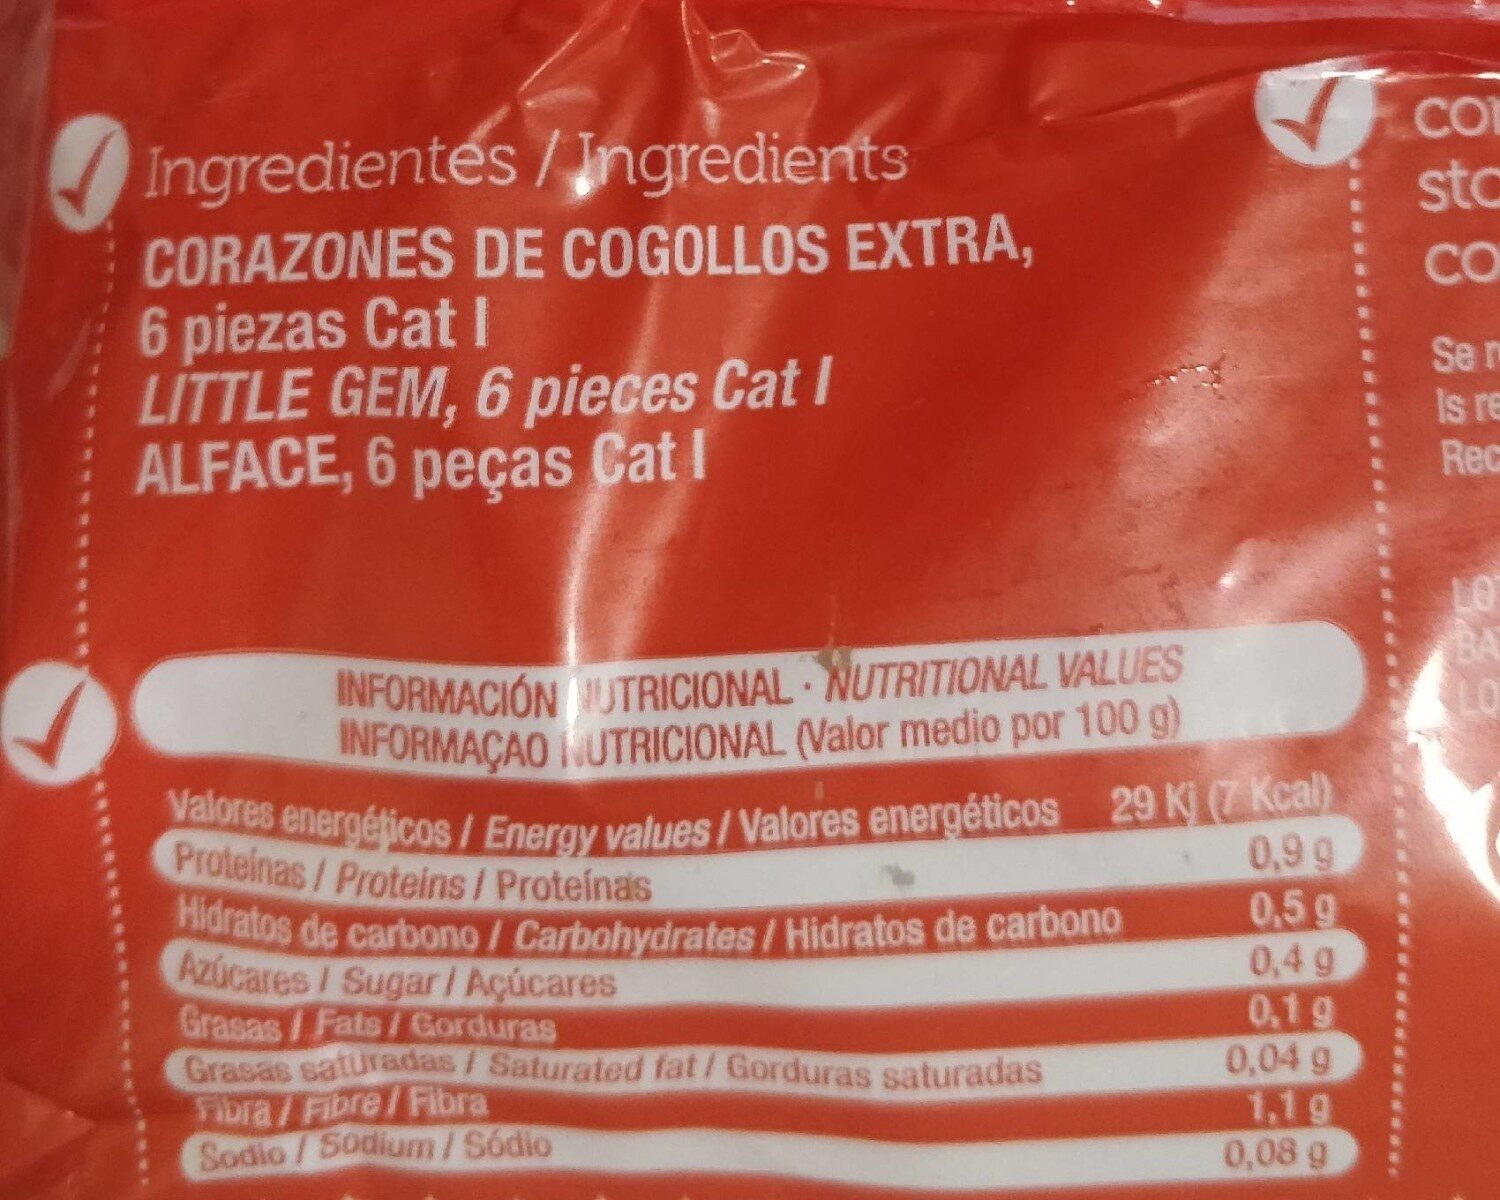 Corazones de Cogollos Extra - Nutrition facts - fr